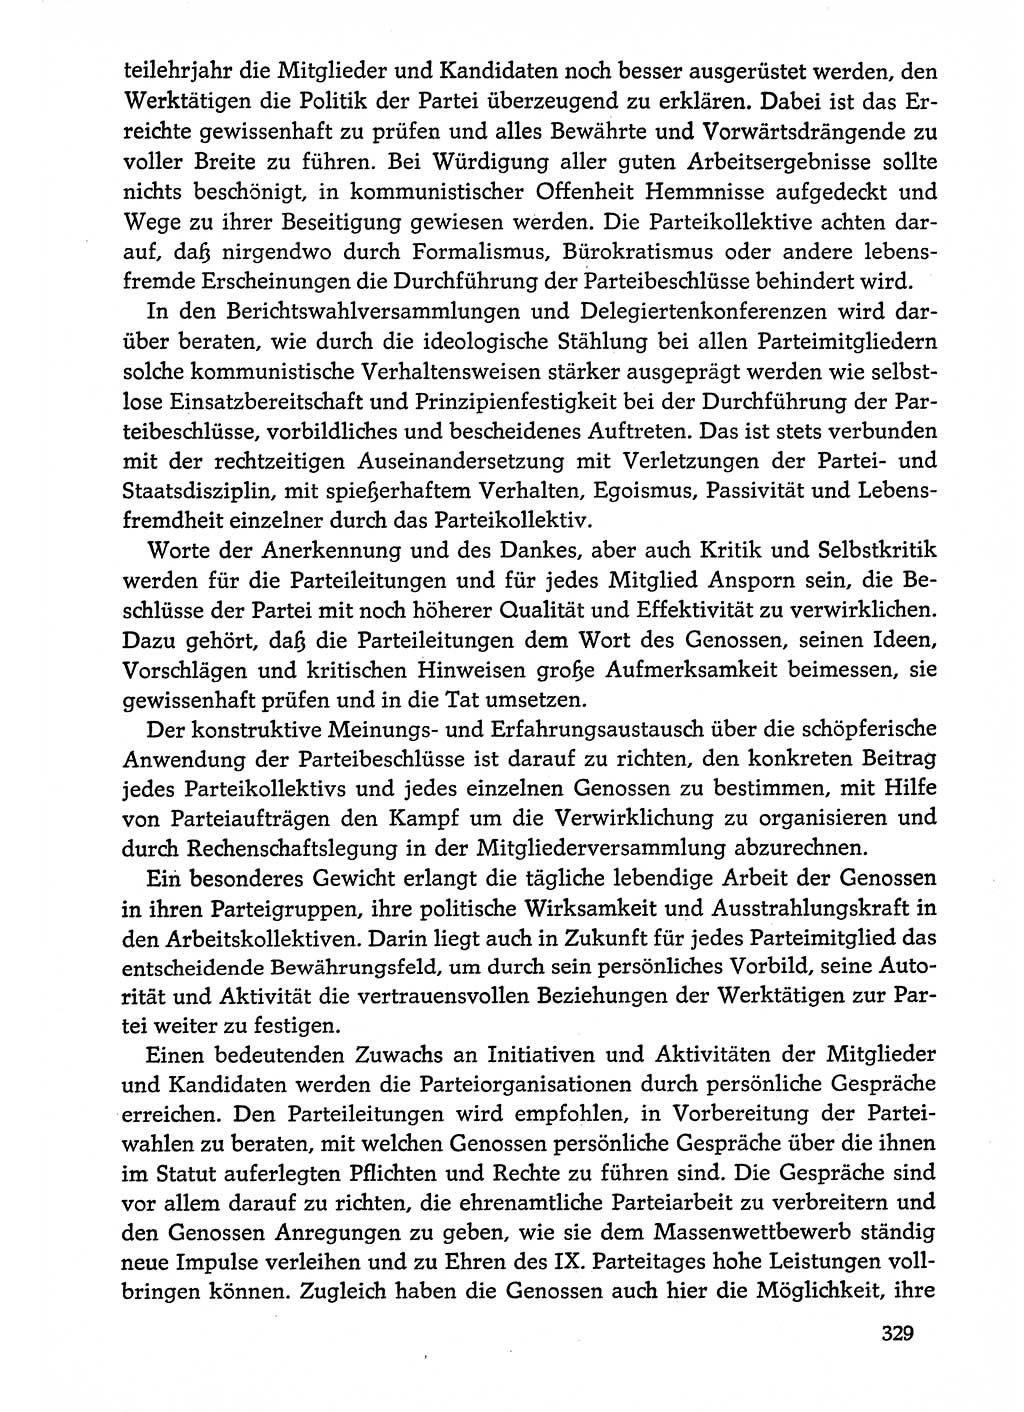 Dokumente der Sozialistischen Einheitspartei Deutschlands (SED) [Deutsche Demokratische Republik (DDR)] 1974-1975, Seite 329 (Dok. SED DDR 1978, Bd. ⅩⅤ, S. 329)